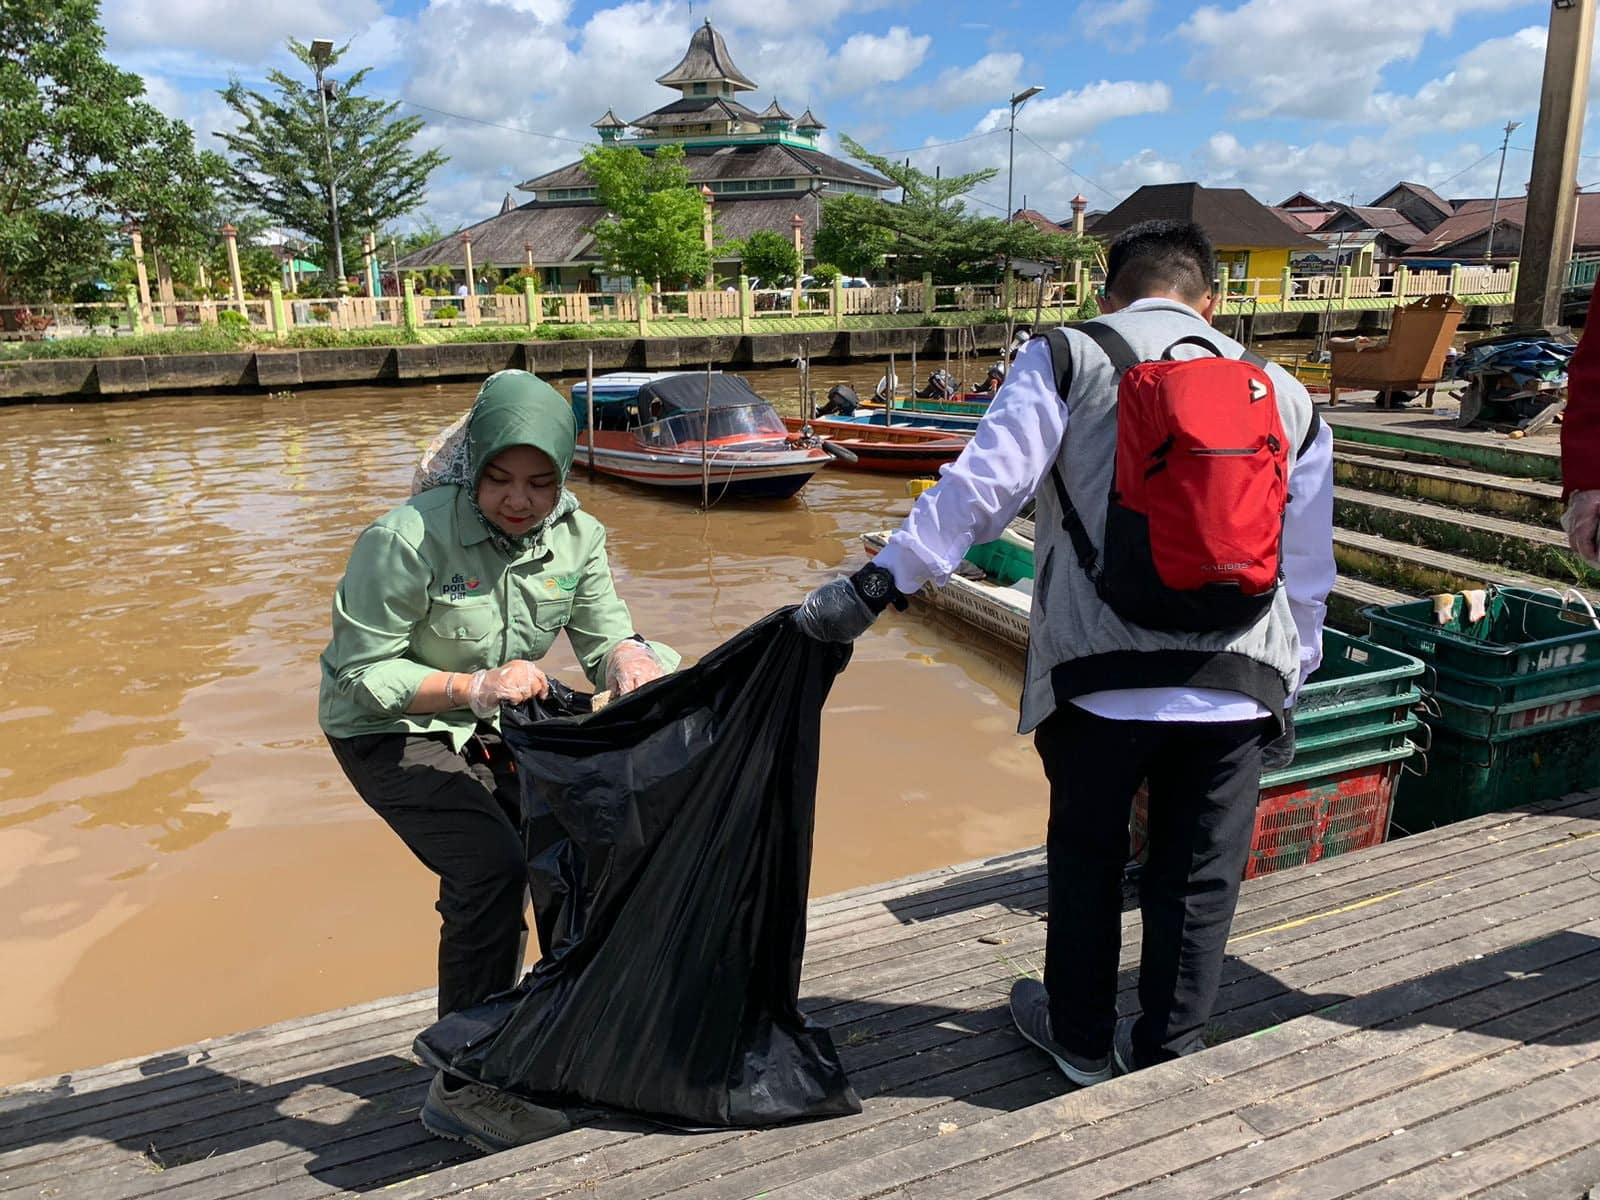 Kadisporapar Provinsi Kalbar, Windy Prihastari melakukan aksi bersih-bersih lingkungan di sejumlah situs wisata bersejarah di Kota Pontianak. (Foto: Jauhari)